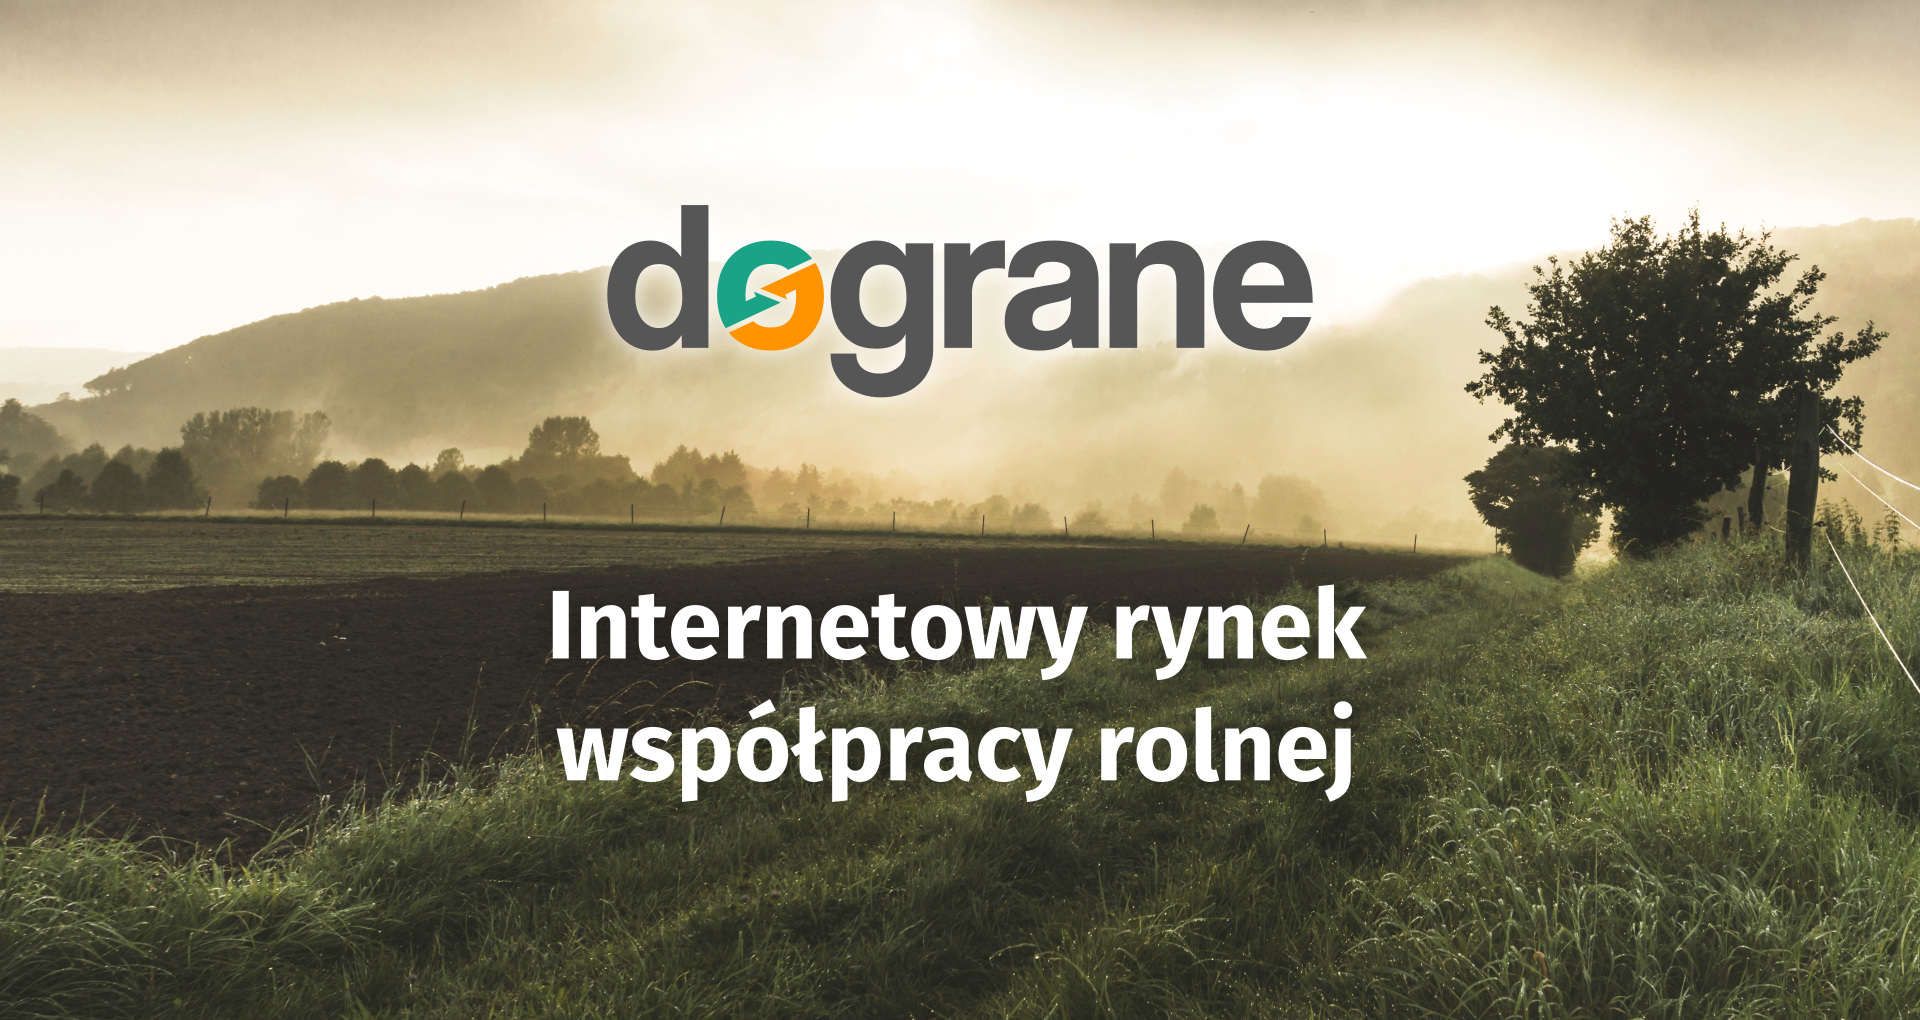 Dograne.pl – czyli jak efektywnie dograć współpracę na rynku